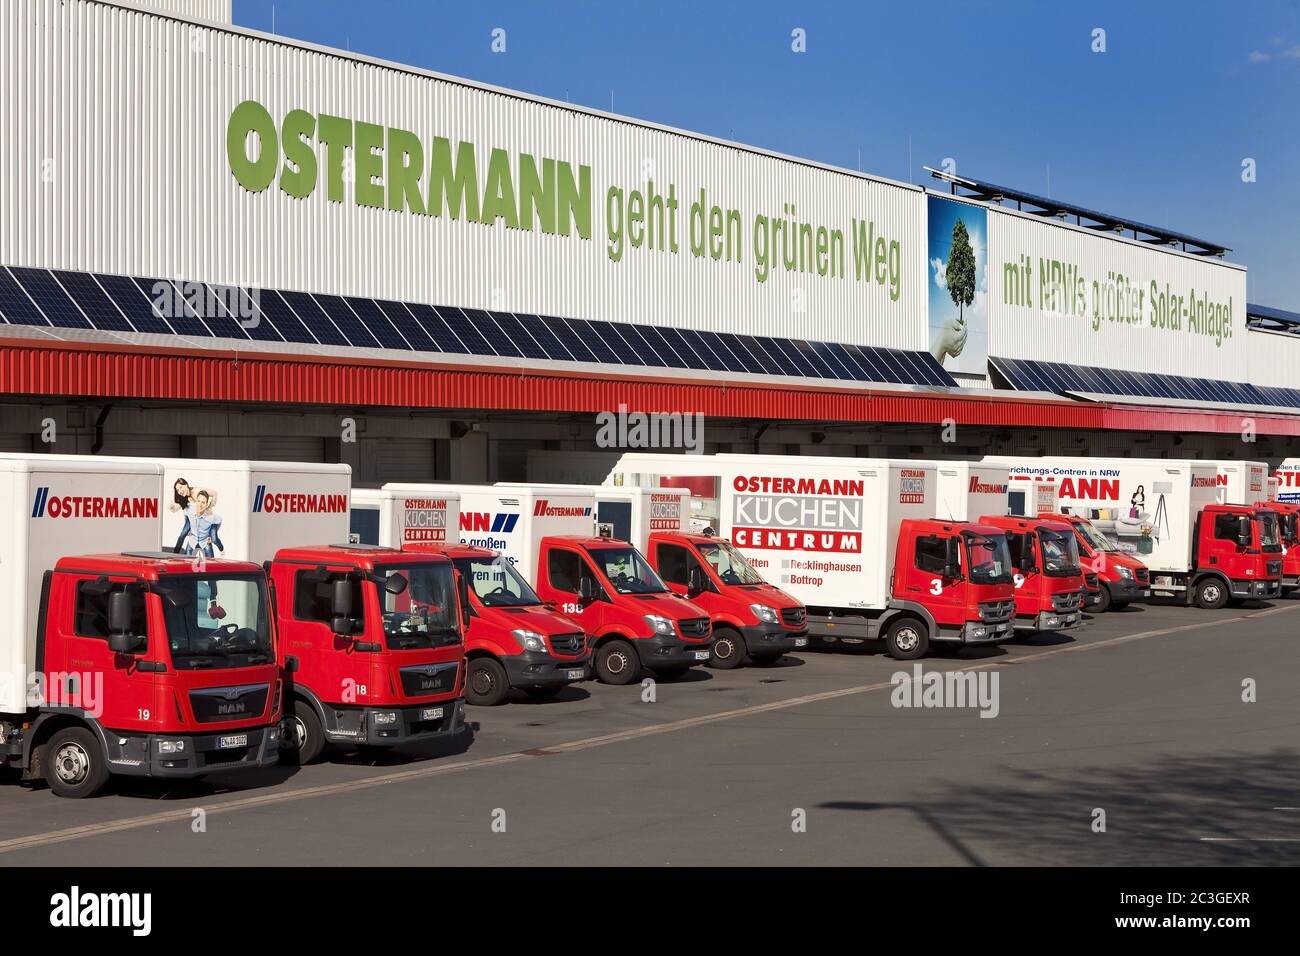 Atelier de meubles Ostermann, tous les véhicules de livraison sont encore debout, shutdown, Witten, Allemagne, Europe Banque D'Images